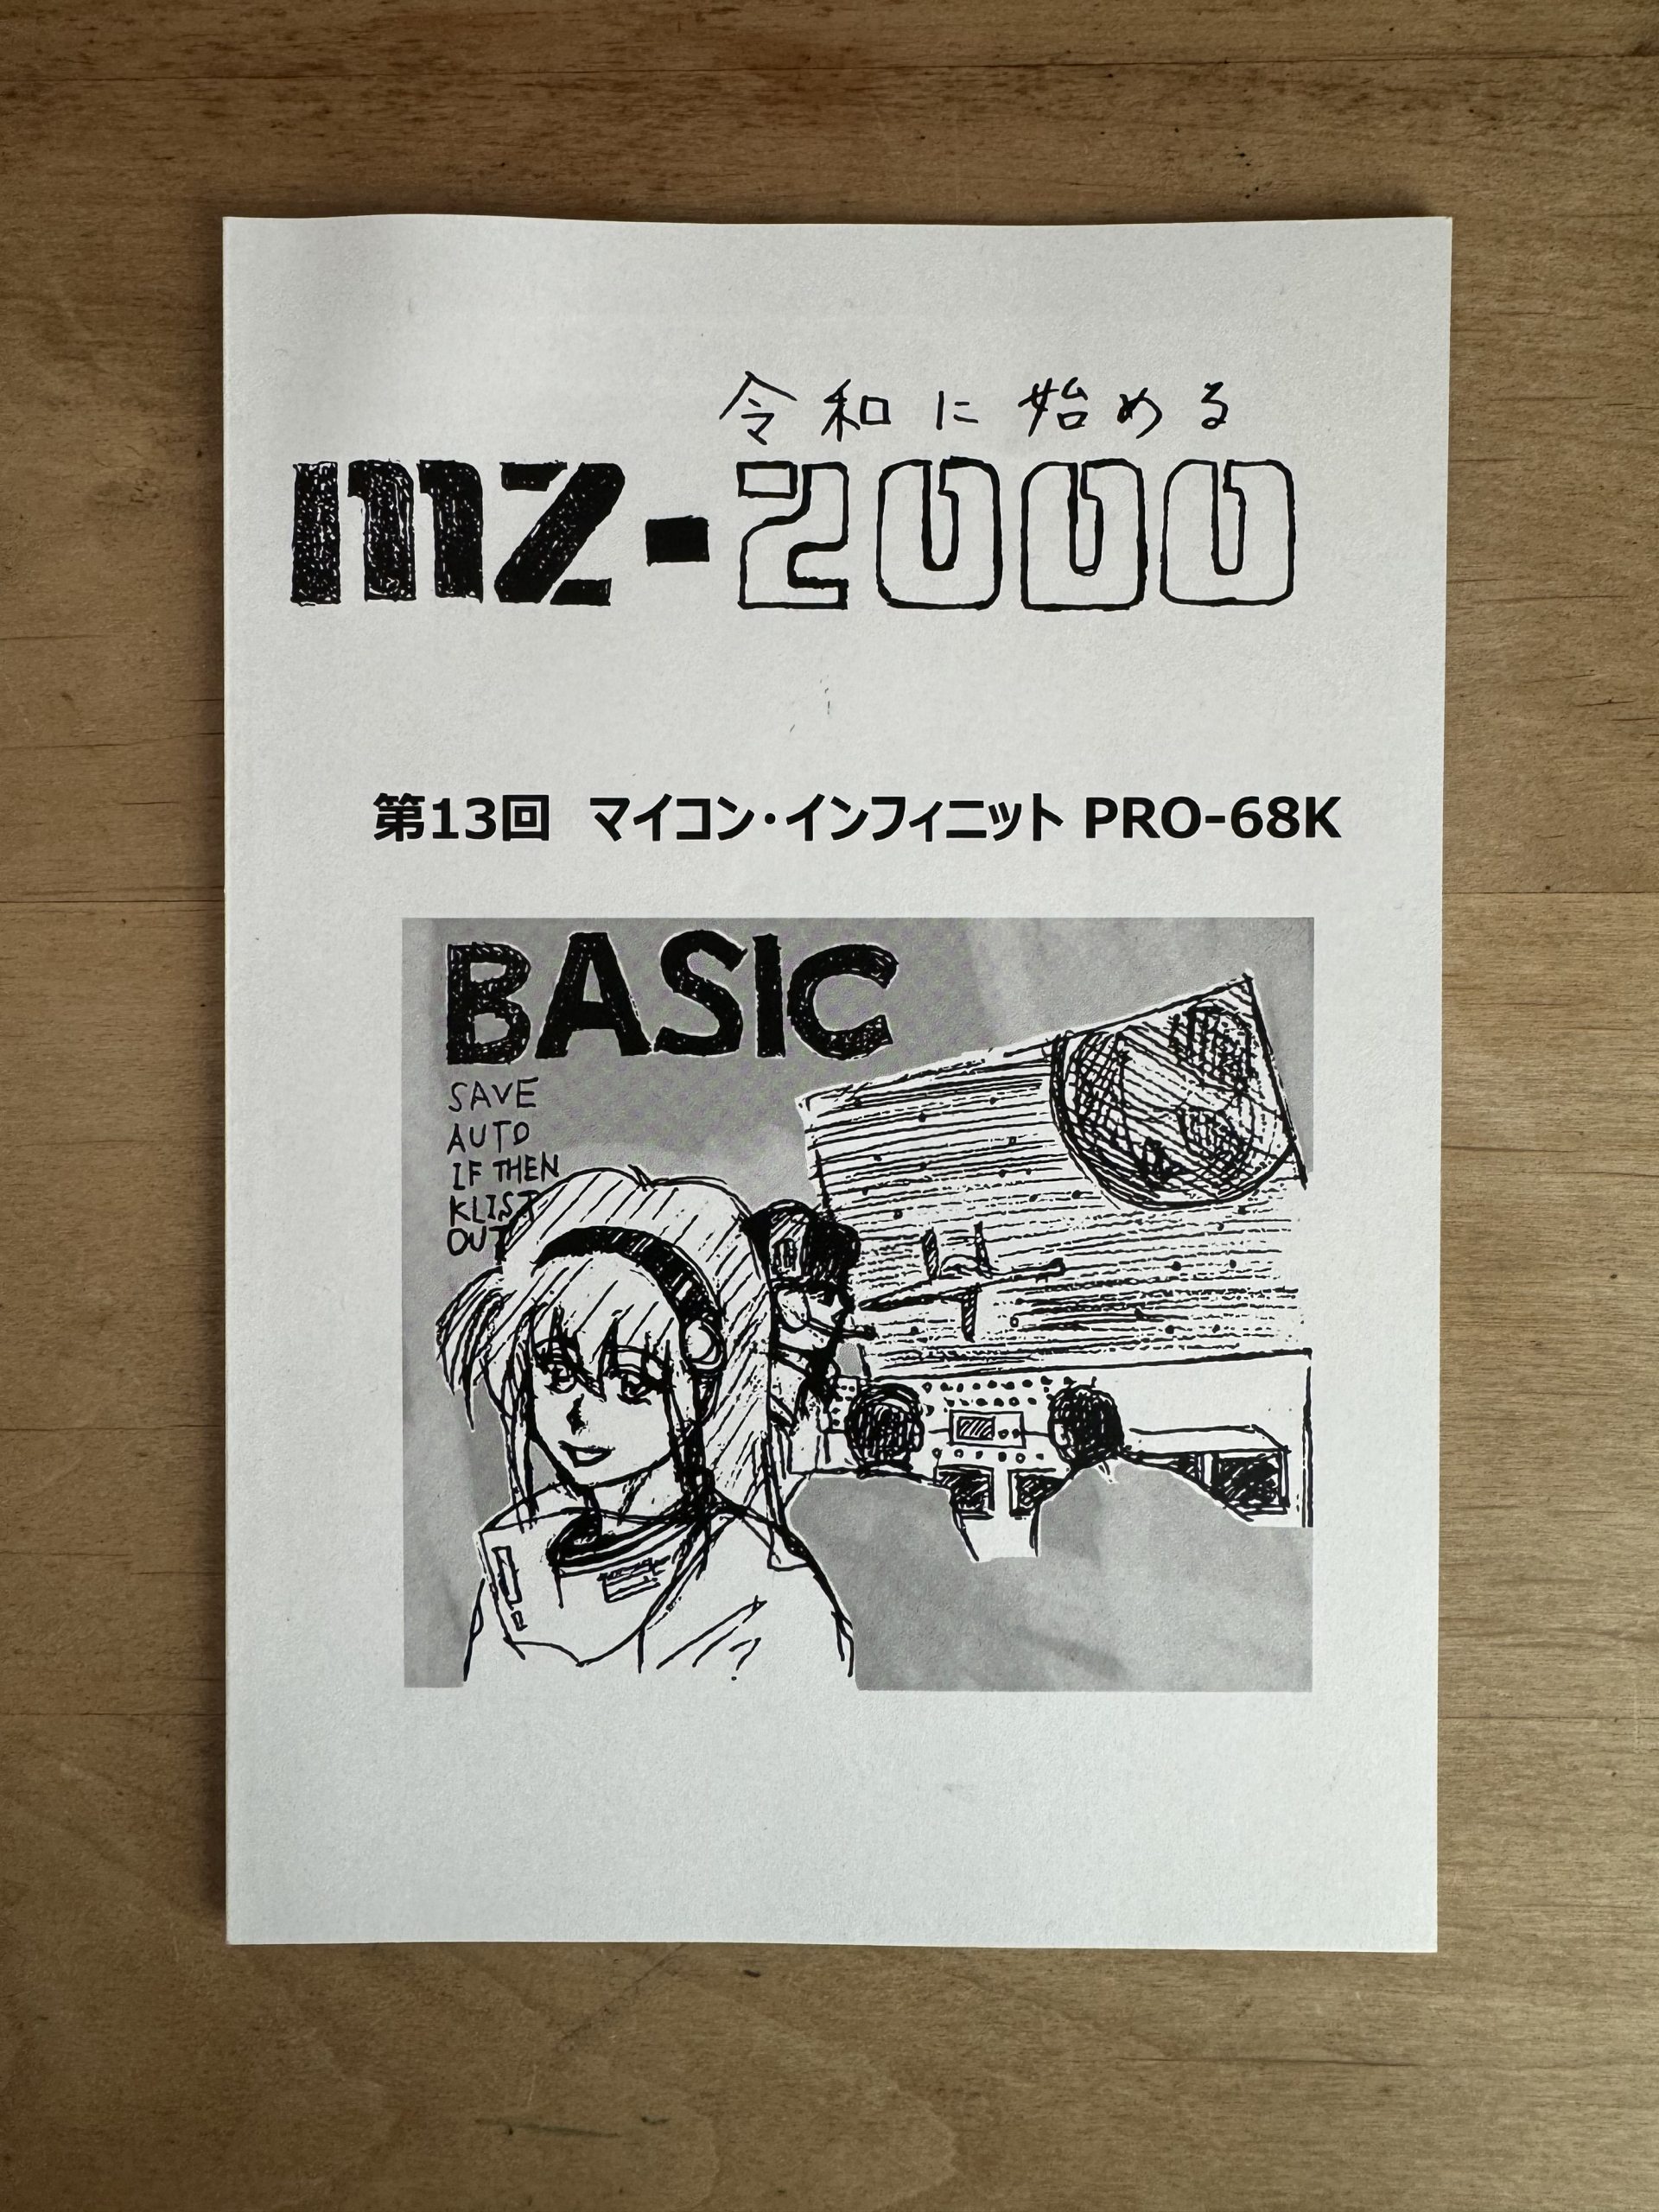 令和に始めるMZ-2000